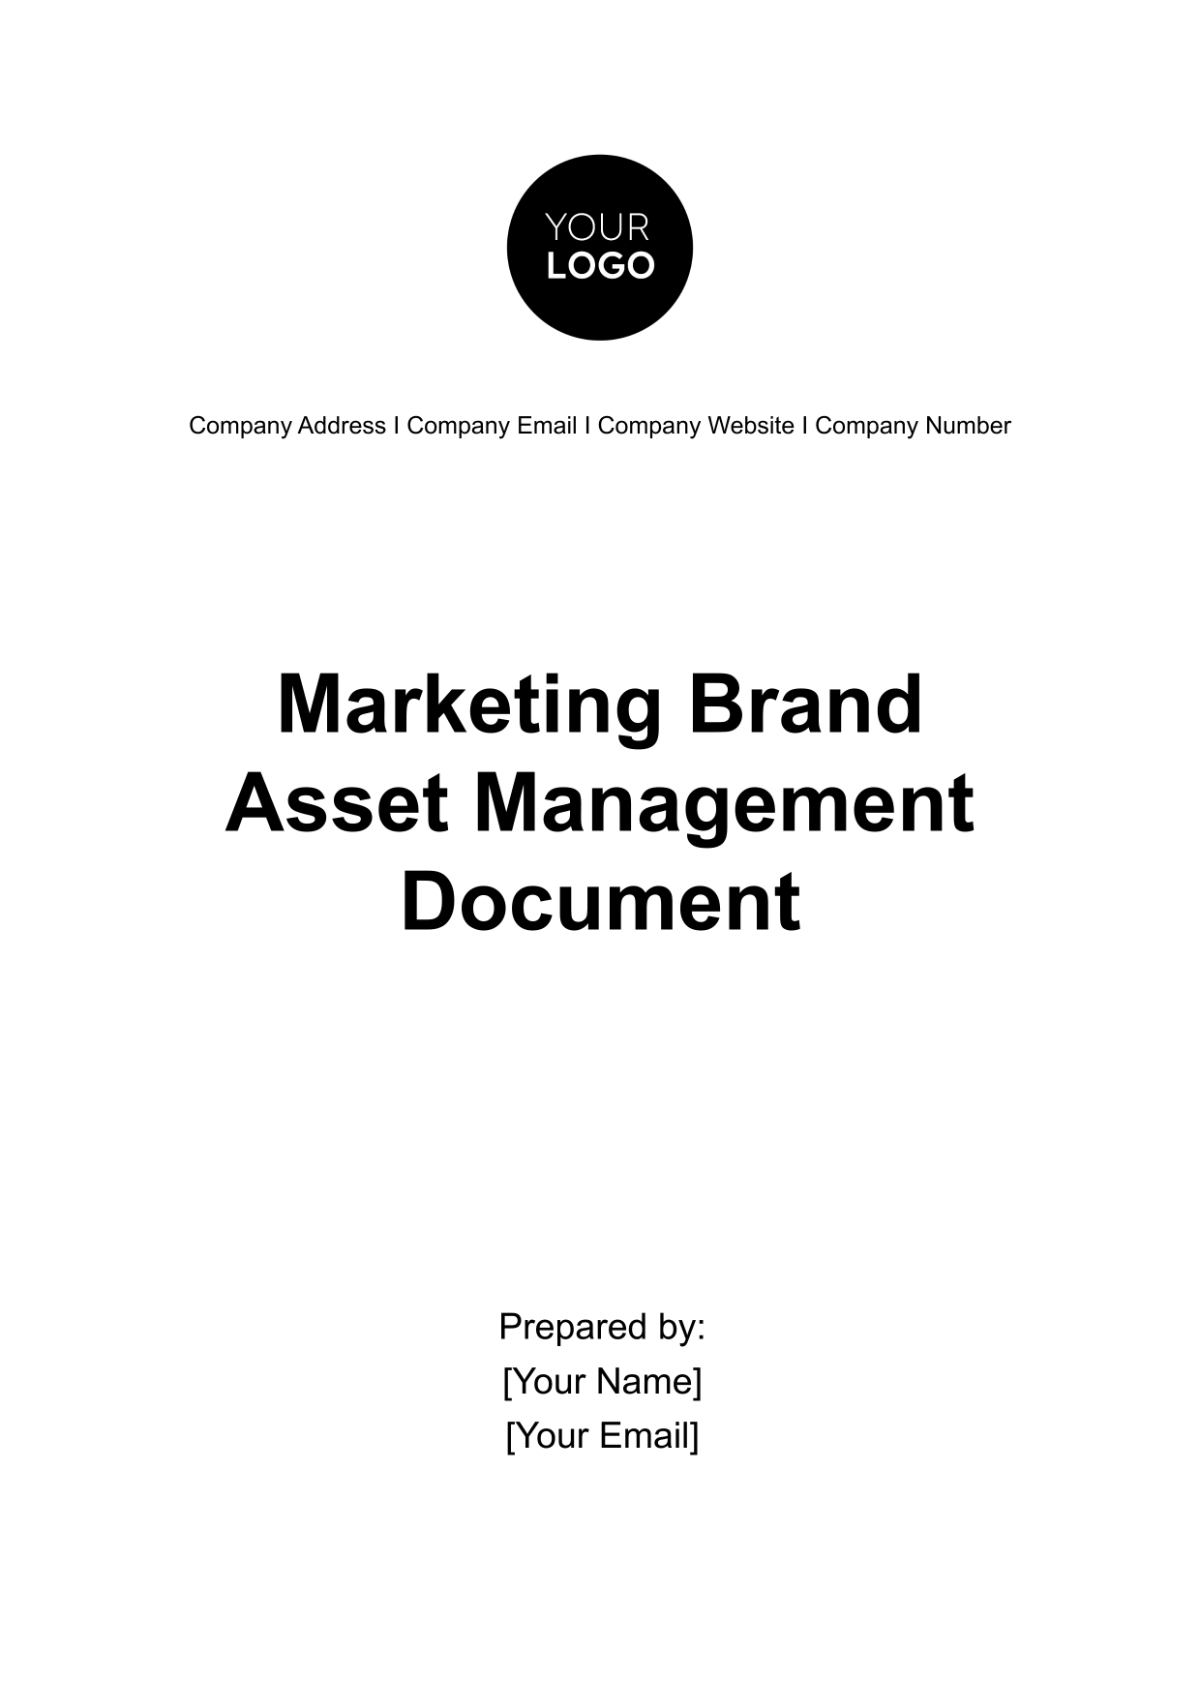 Marketing Brand Asset Management Document Template